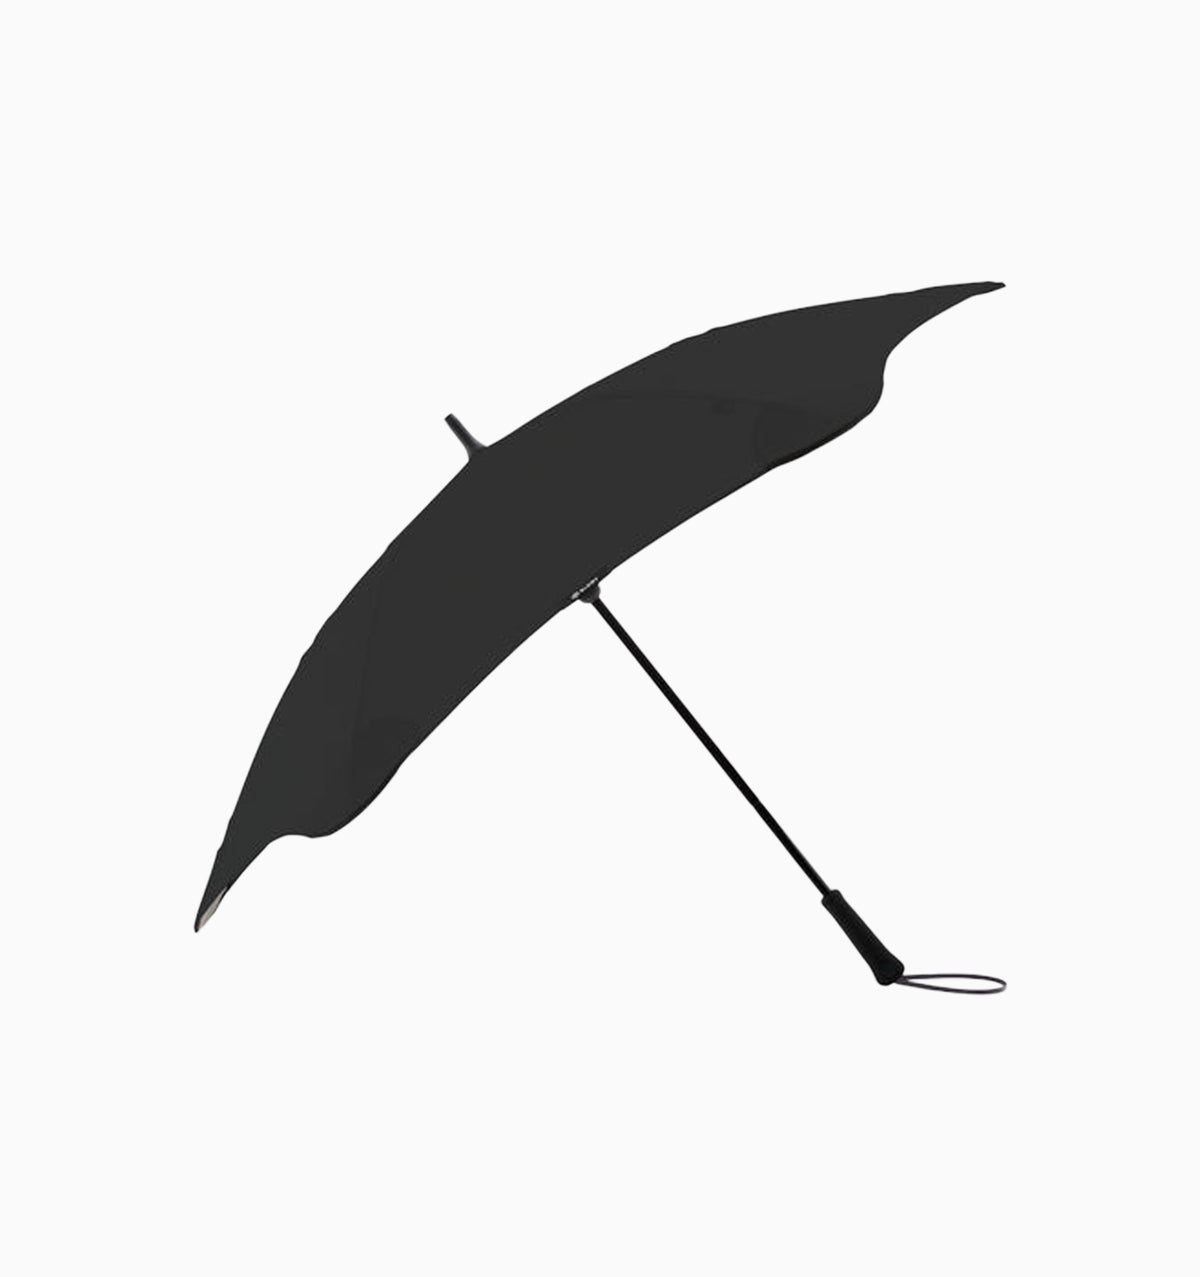 Blunt Exec Umbrella - Black